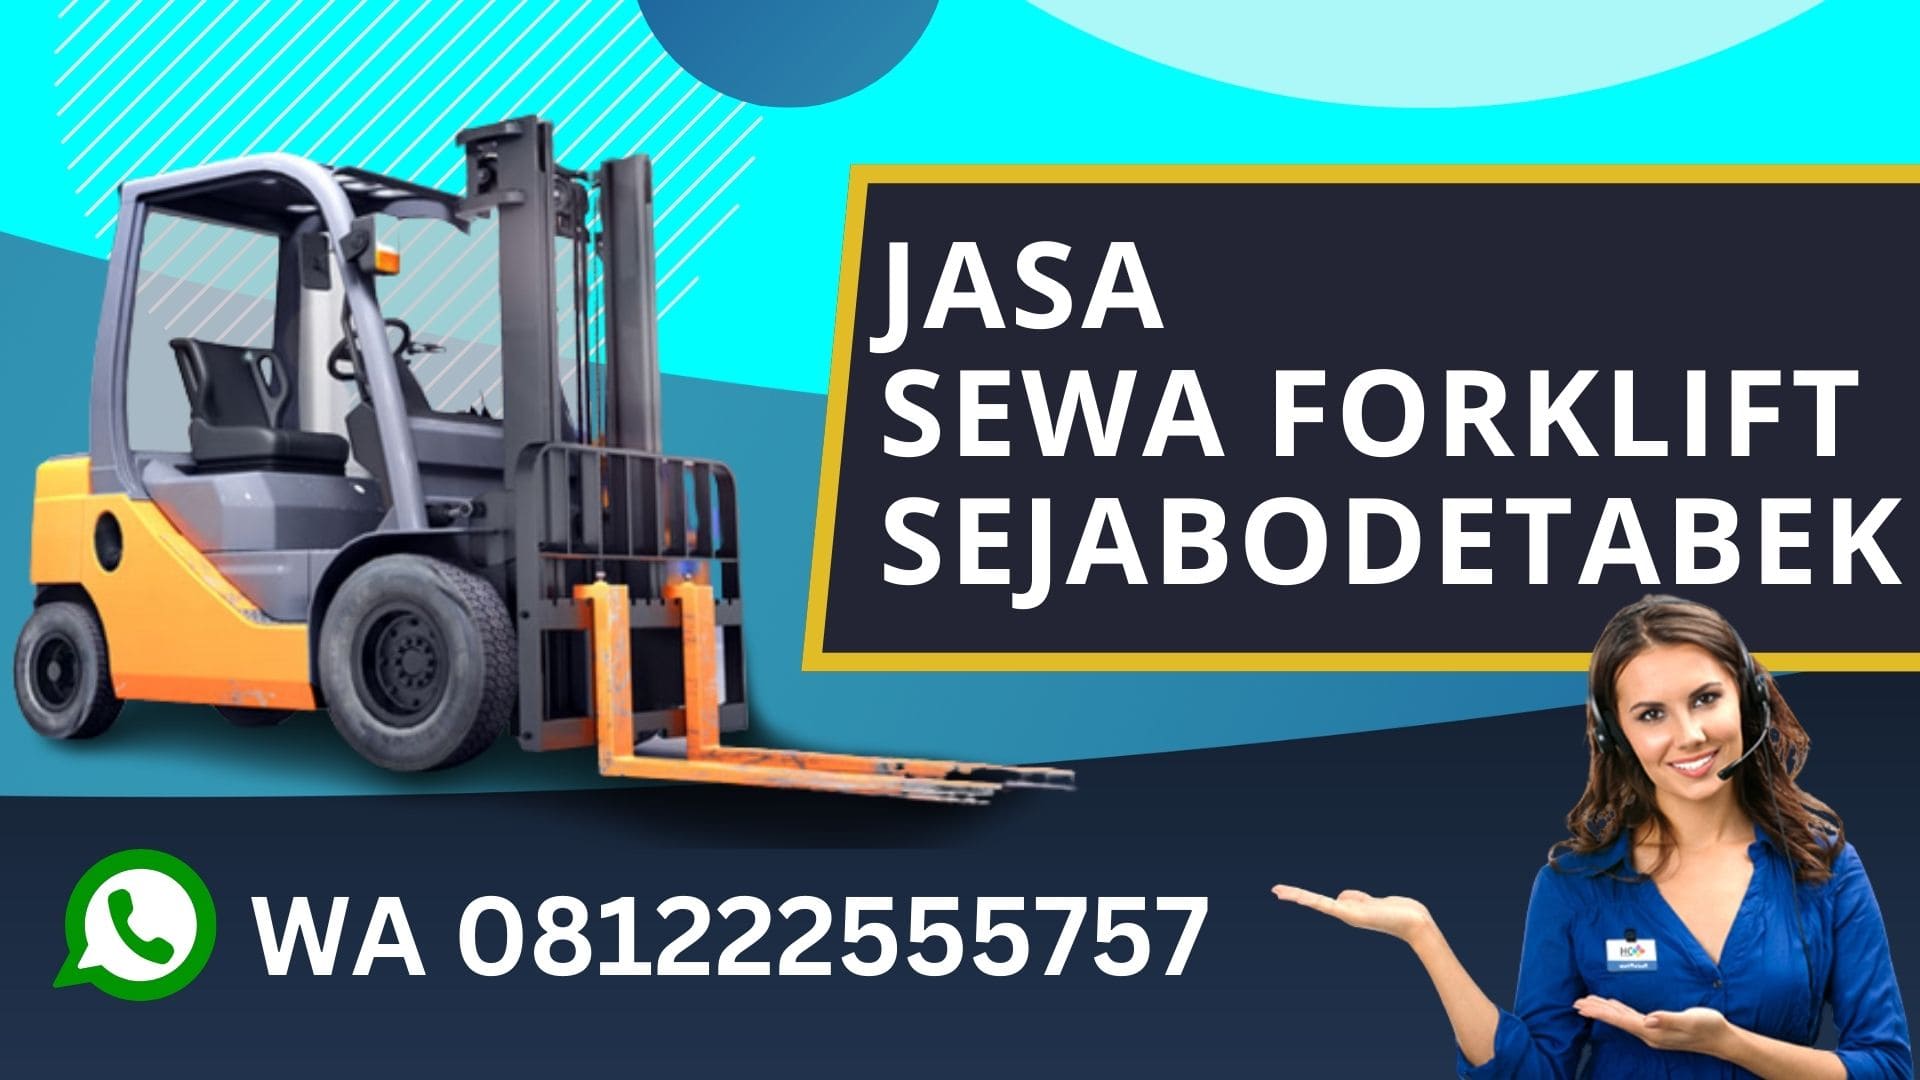 WA 081222555757 Sewa Forklift Makasar Jakarta Timur, Rental Forklift, biaya sewa forklift harian, rental forklift bulanan